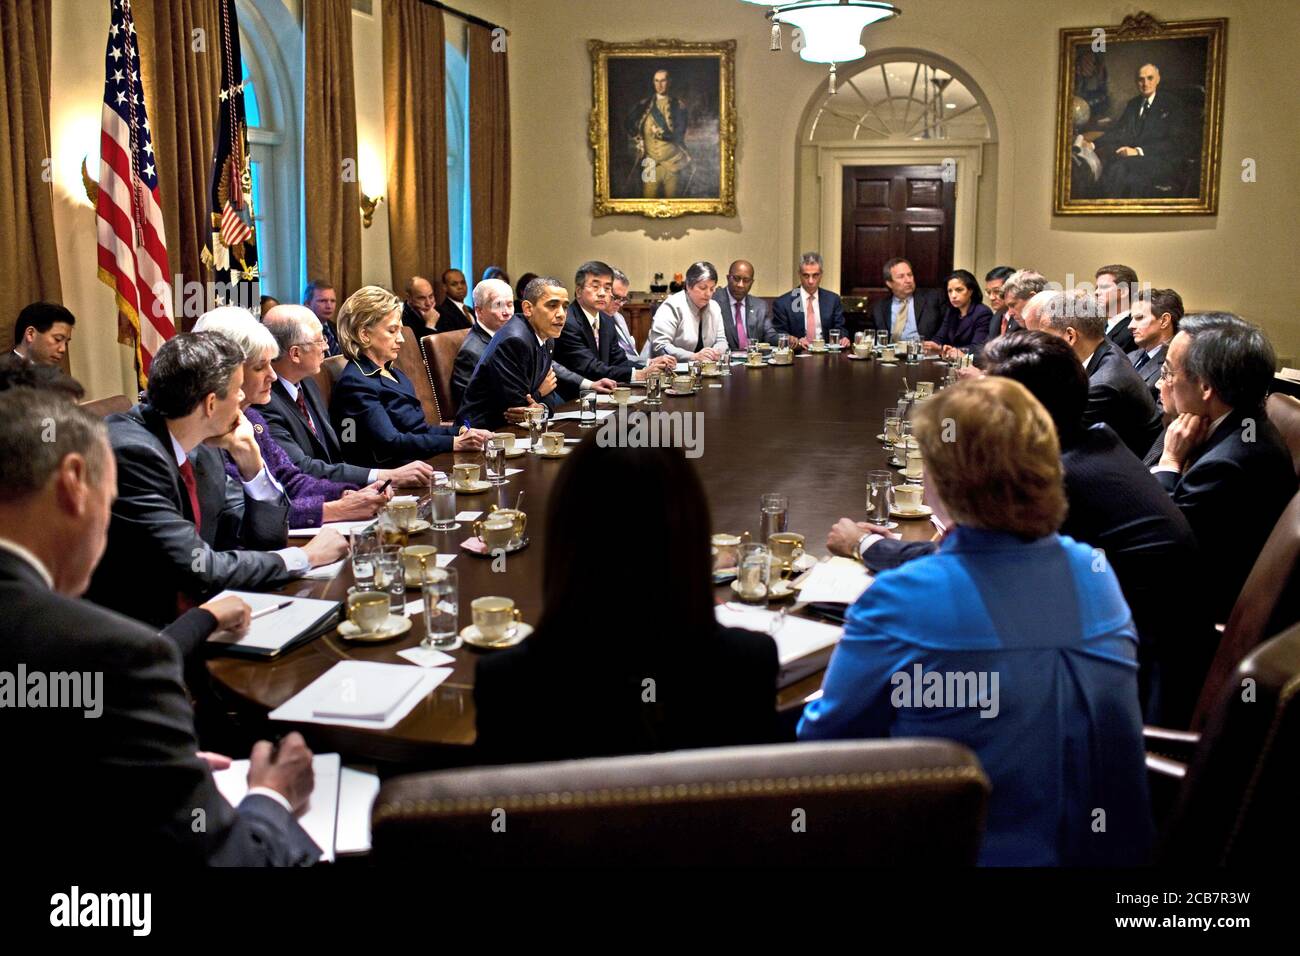 El presidente Barack Obama celebra una reunión del Gabinete (Susan Rice en el grupo) en el Gabinete de la Casa Blanca el 23 2009 de noviembre. Foto de stock